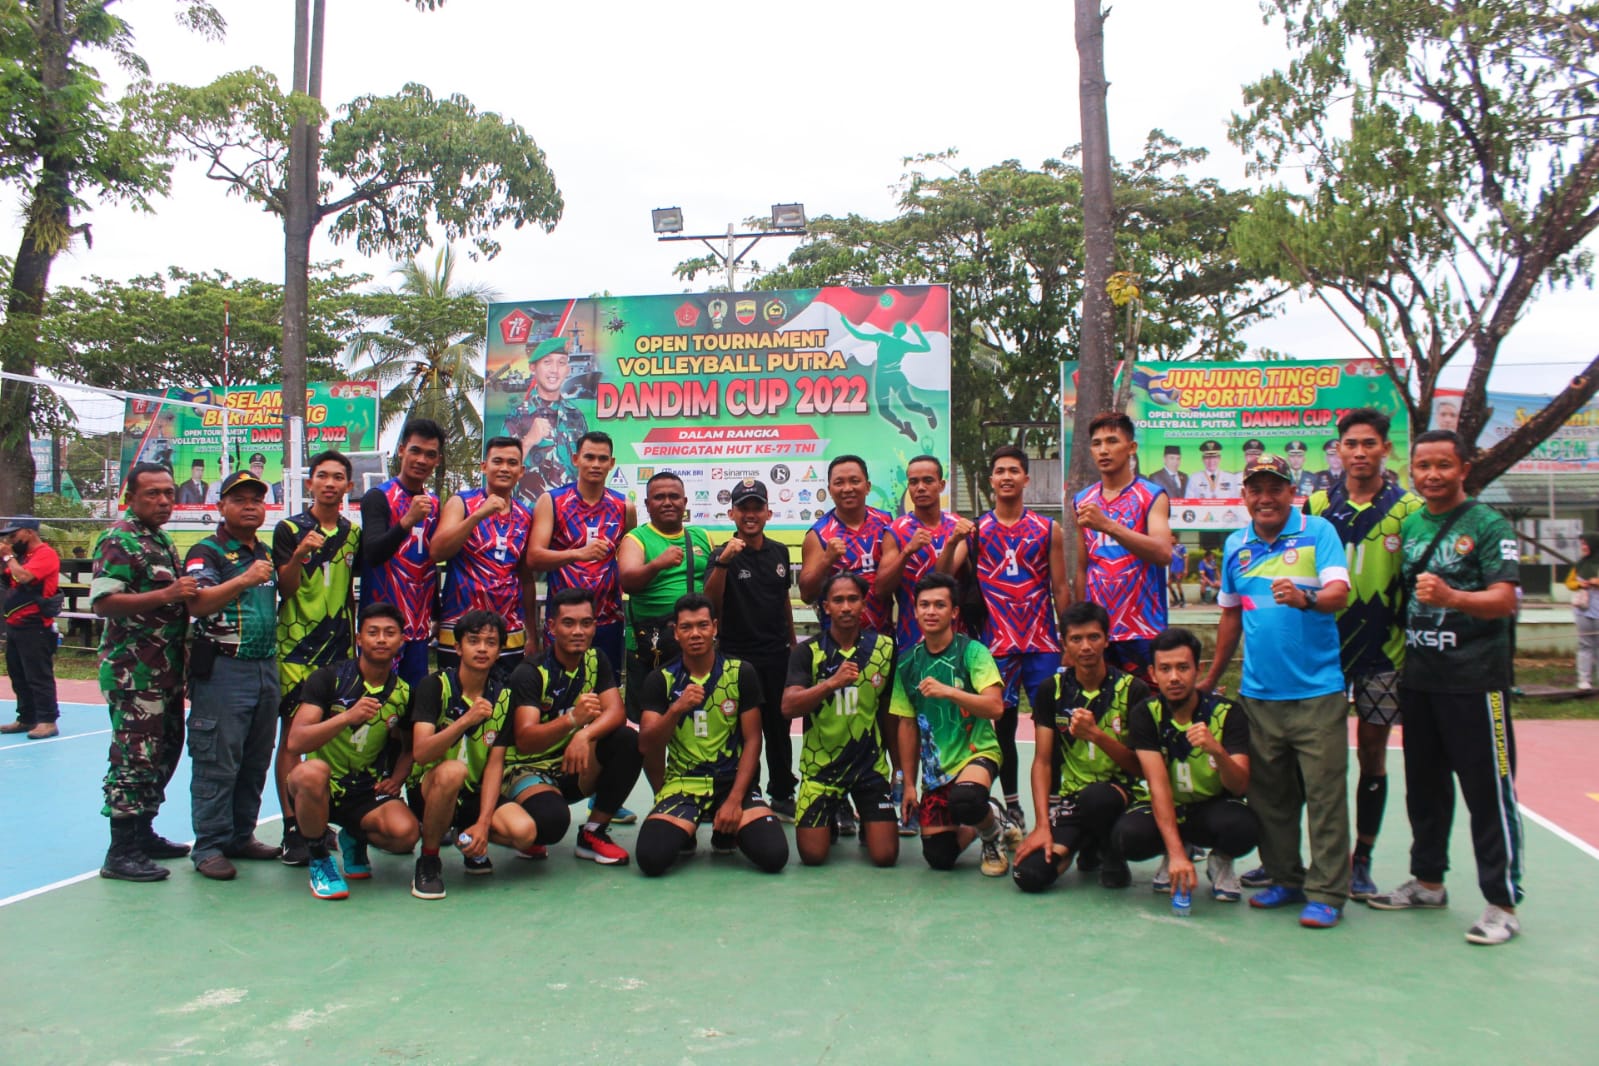 Dandim 0314/Inhil Saksikan Pertandingan Semifinal Volleyball Putra Dandim Cup 2022